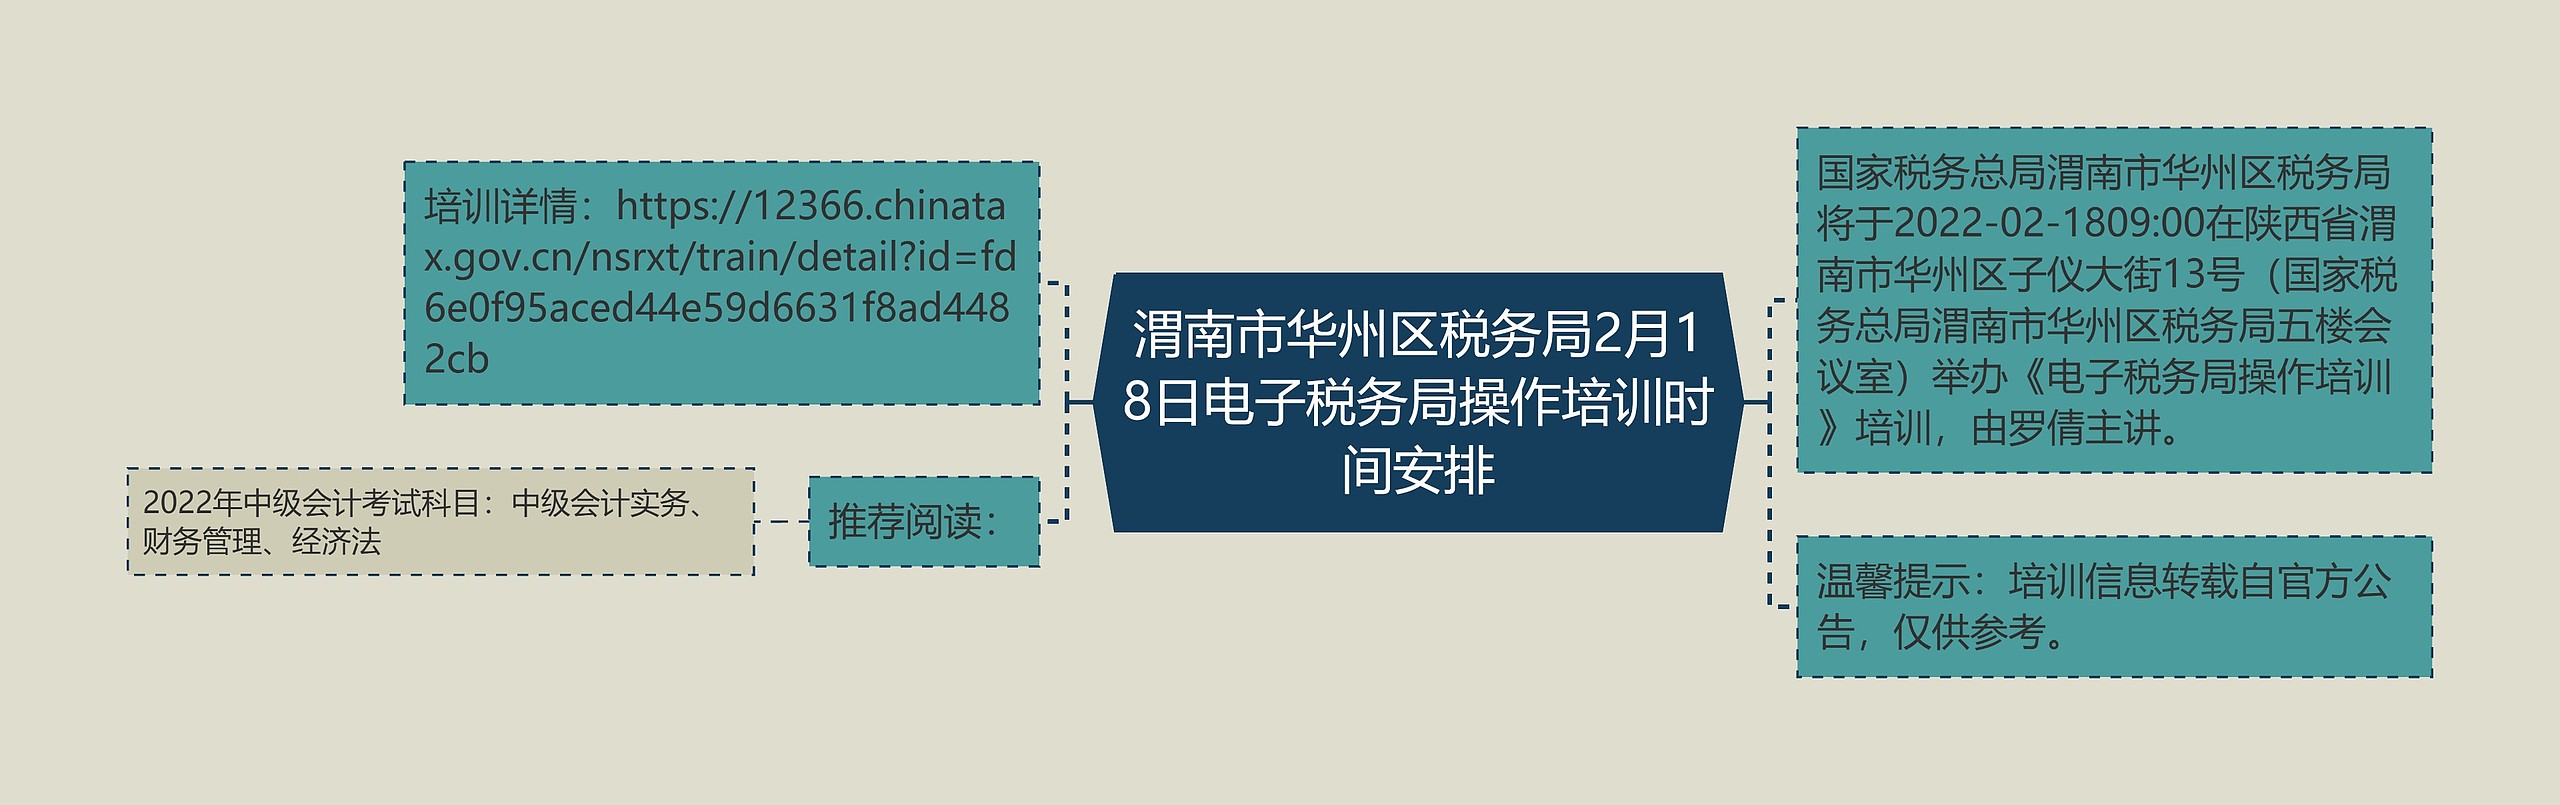 渭南市华州区税务局2月18日电子税务局操作培训时间安排思维导图